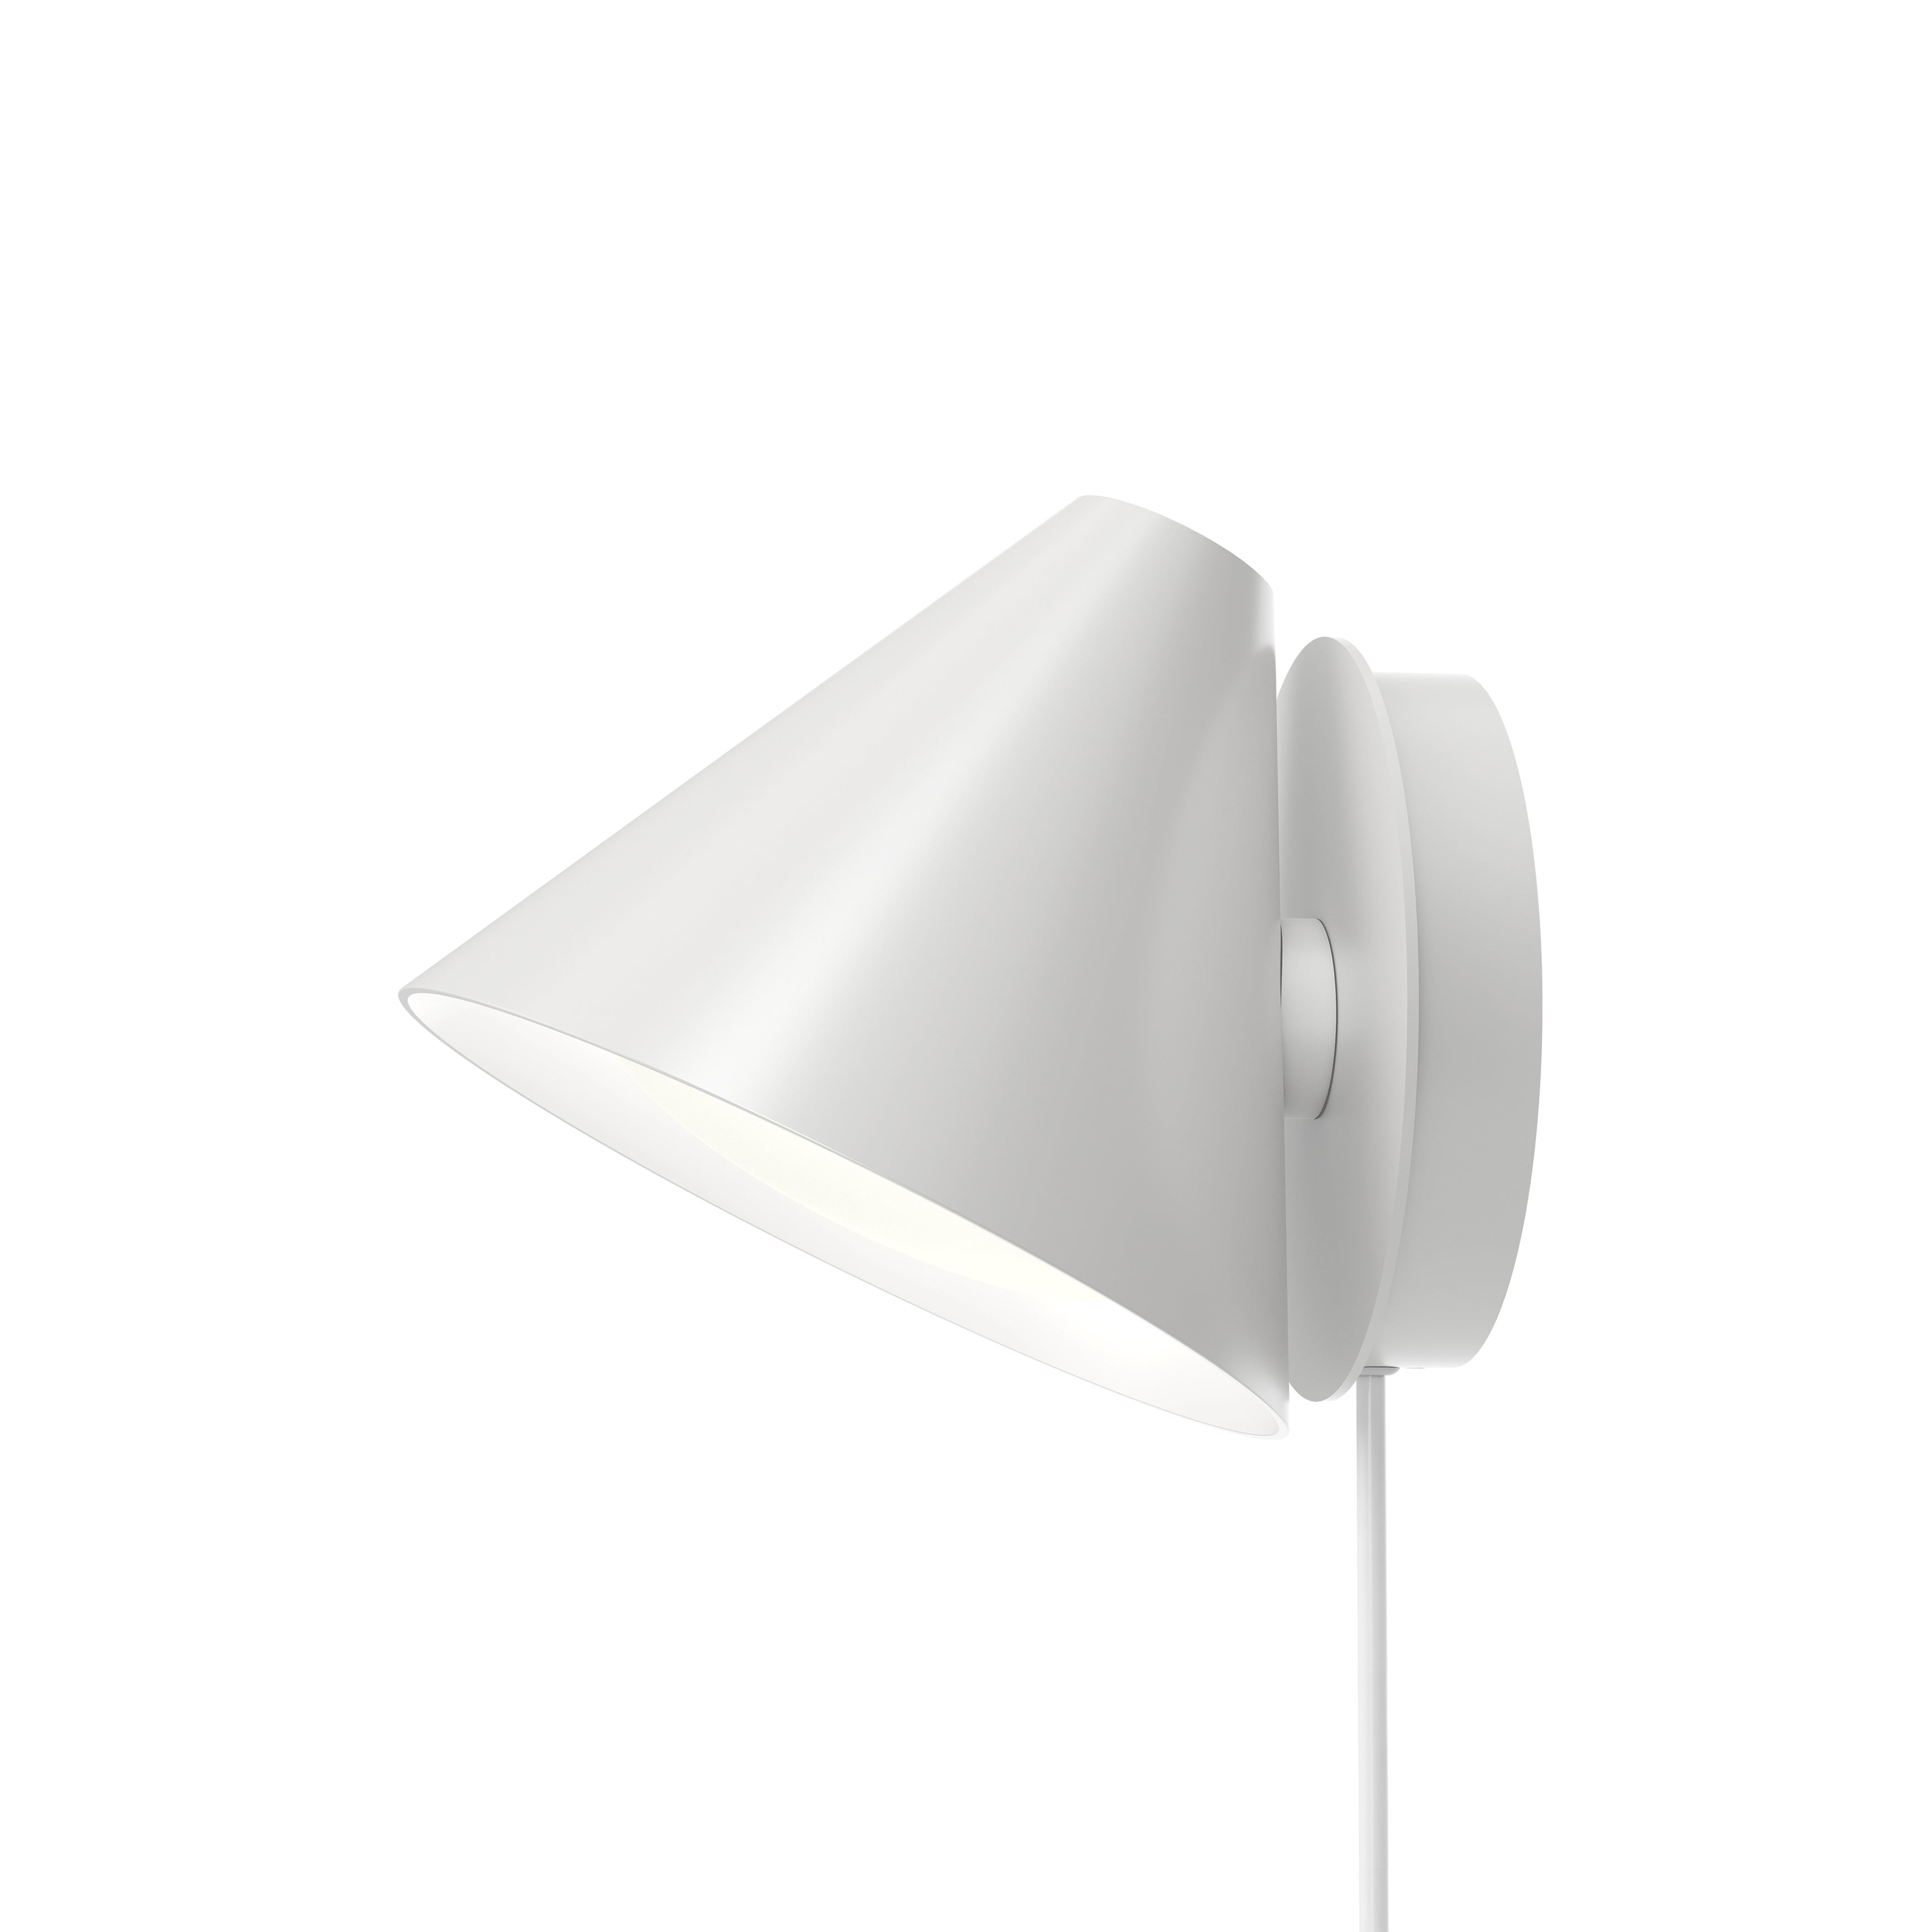 Keglen Wall Lamp: White